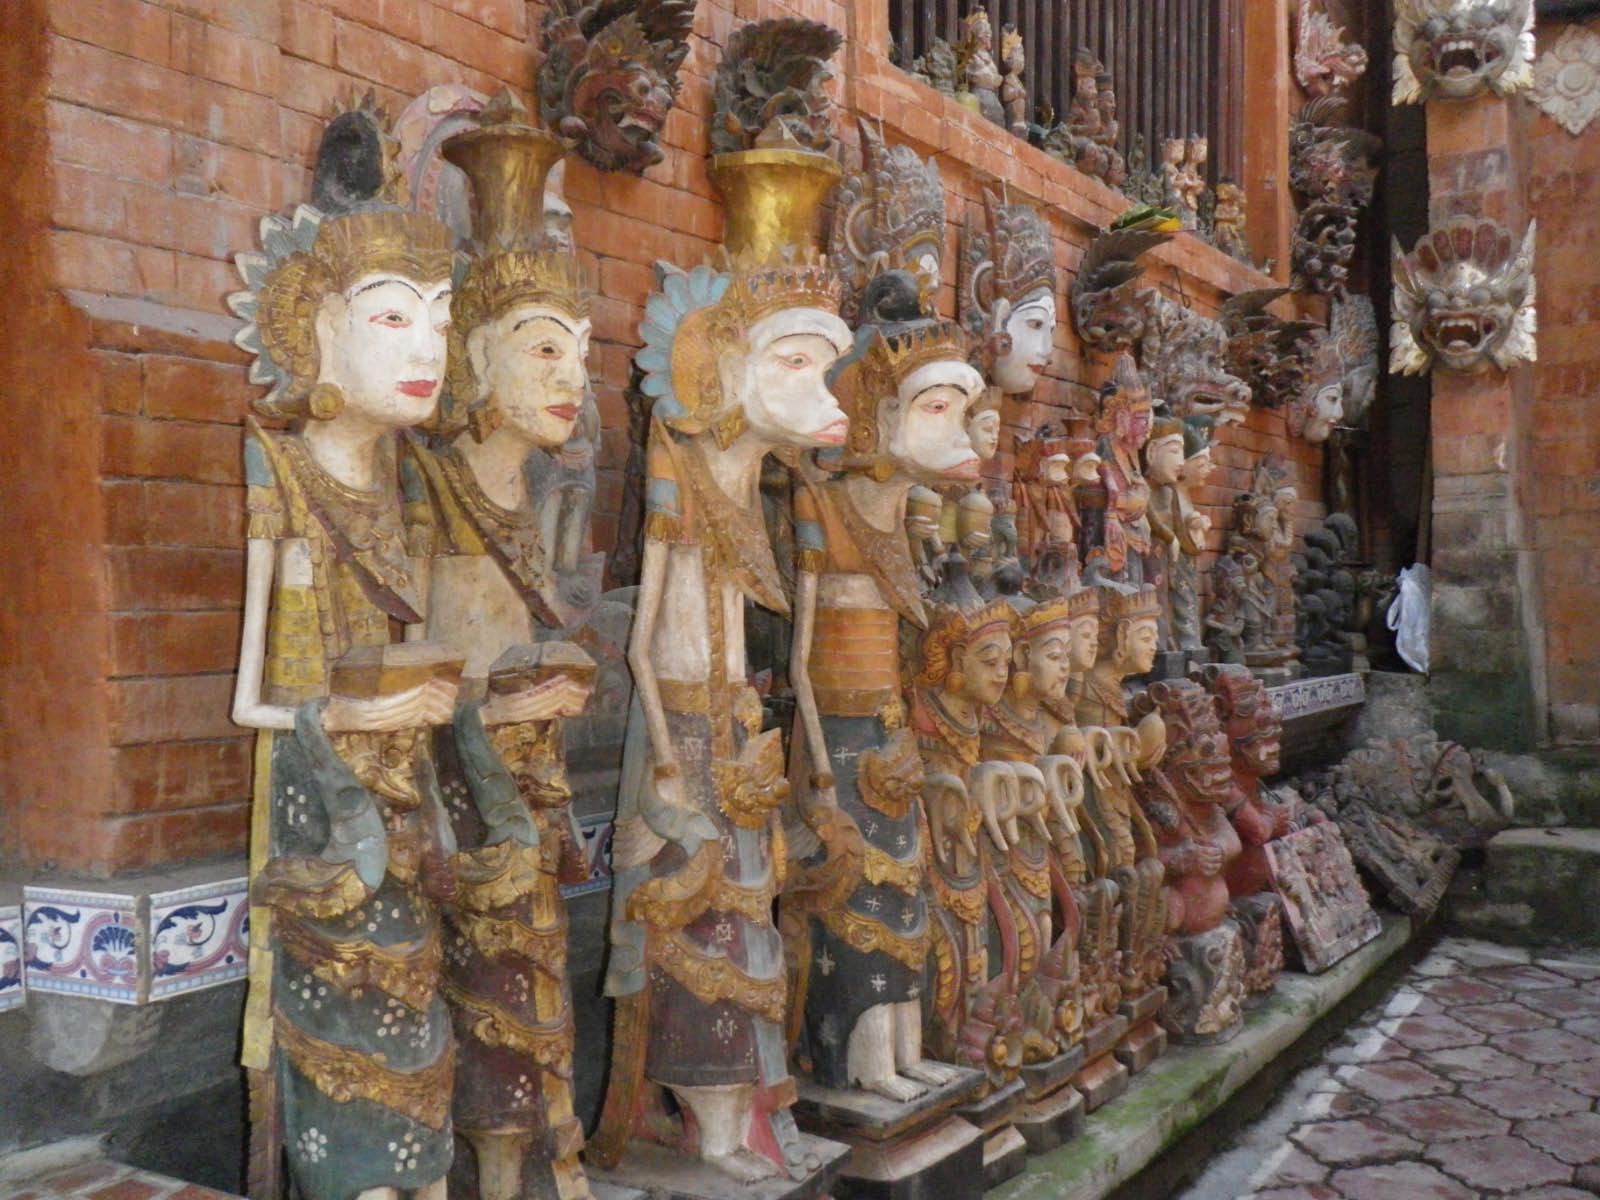 statues tarditionelle des Bali Aga